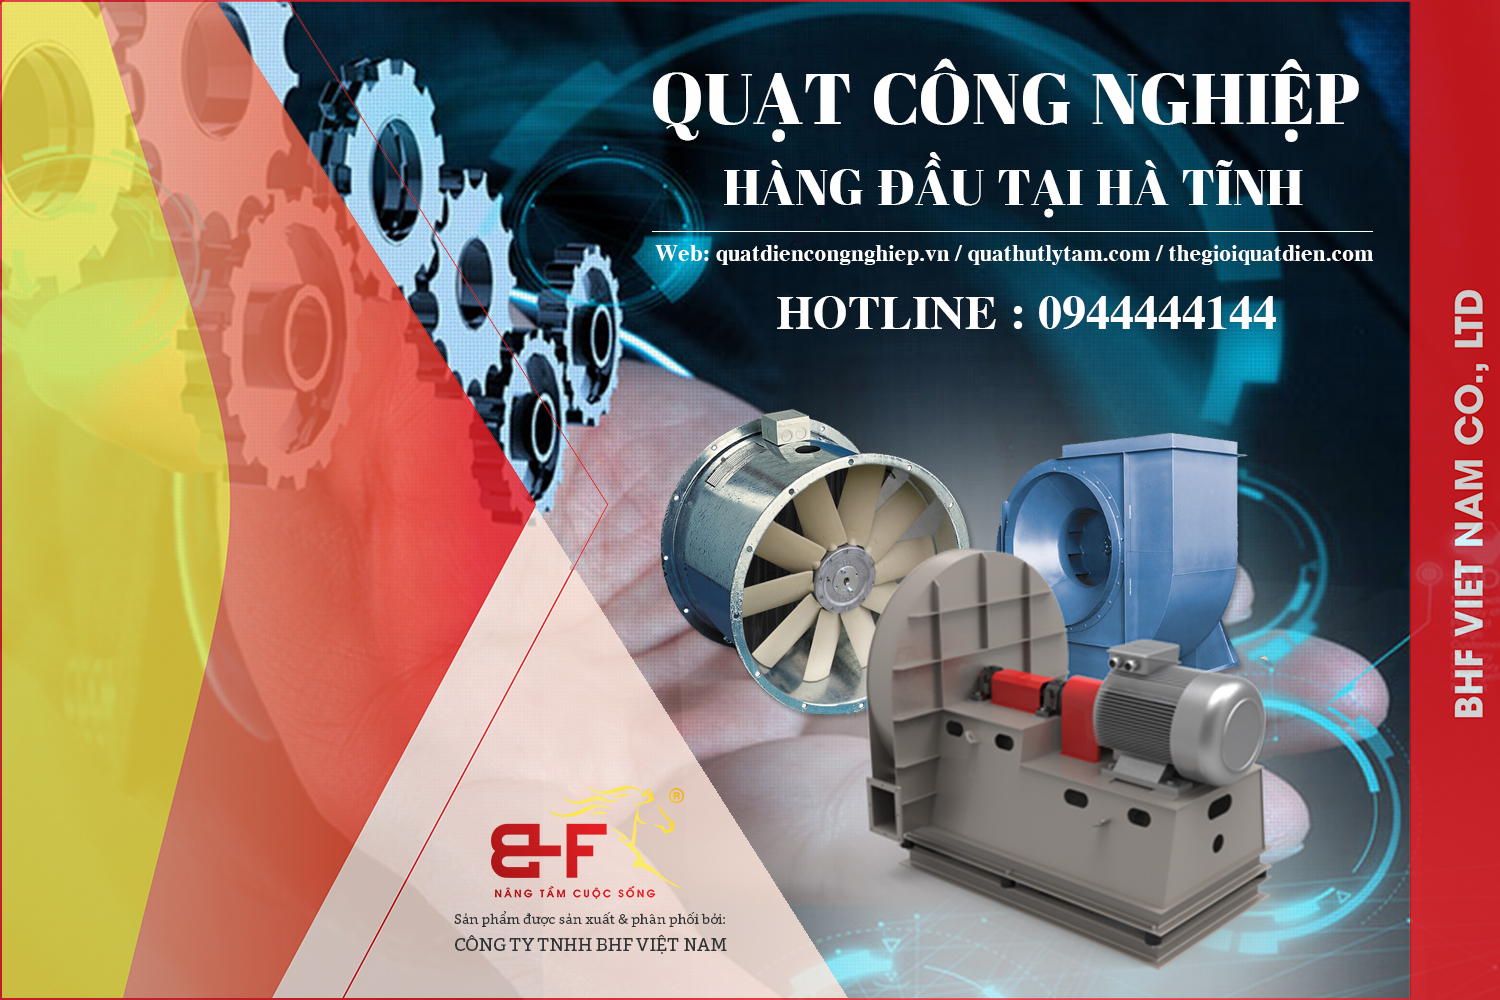 Công ty Quạt Công Nghiệp BHF Việt Nam tại Hà Tĩnh